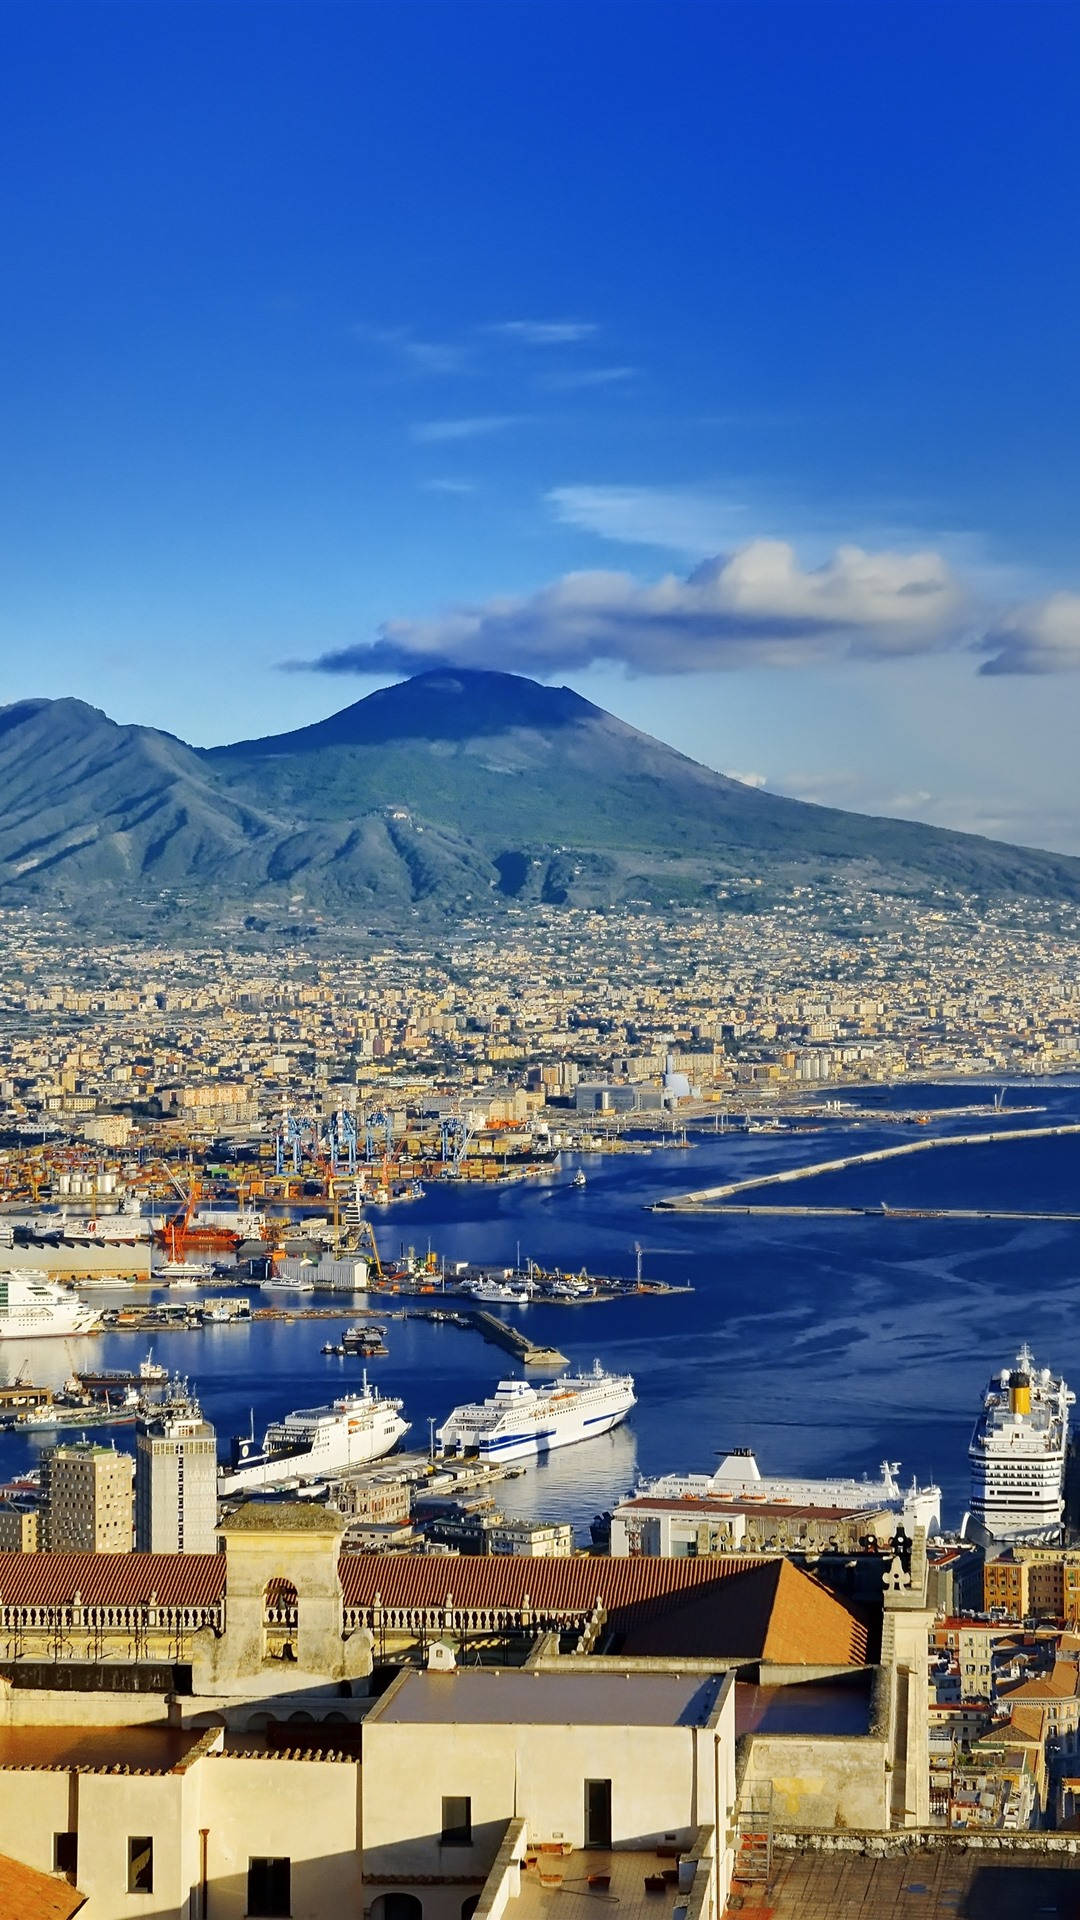 Naples Docked Cruise Ships Background